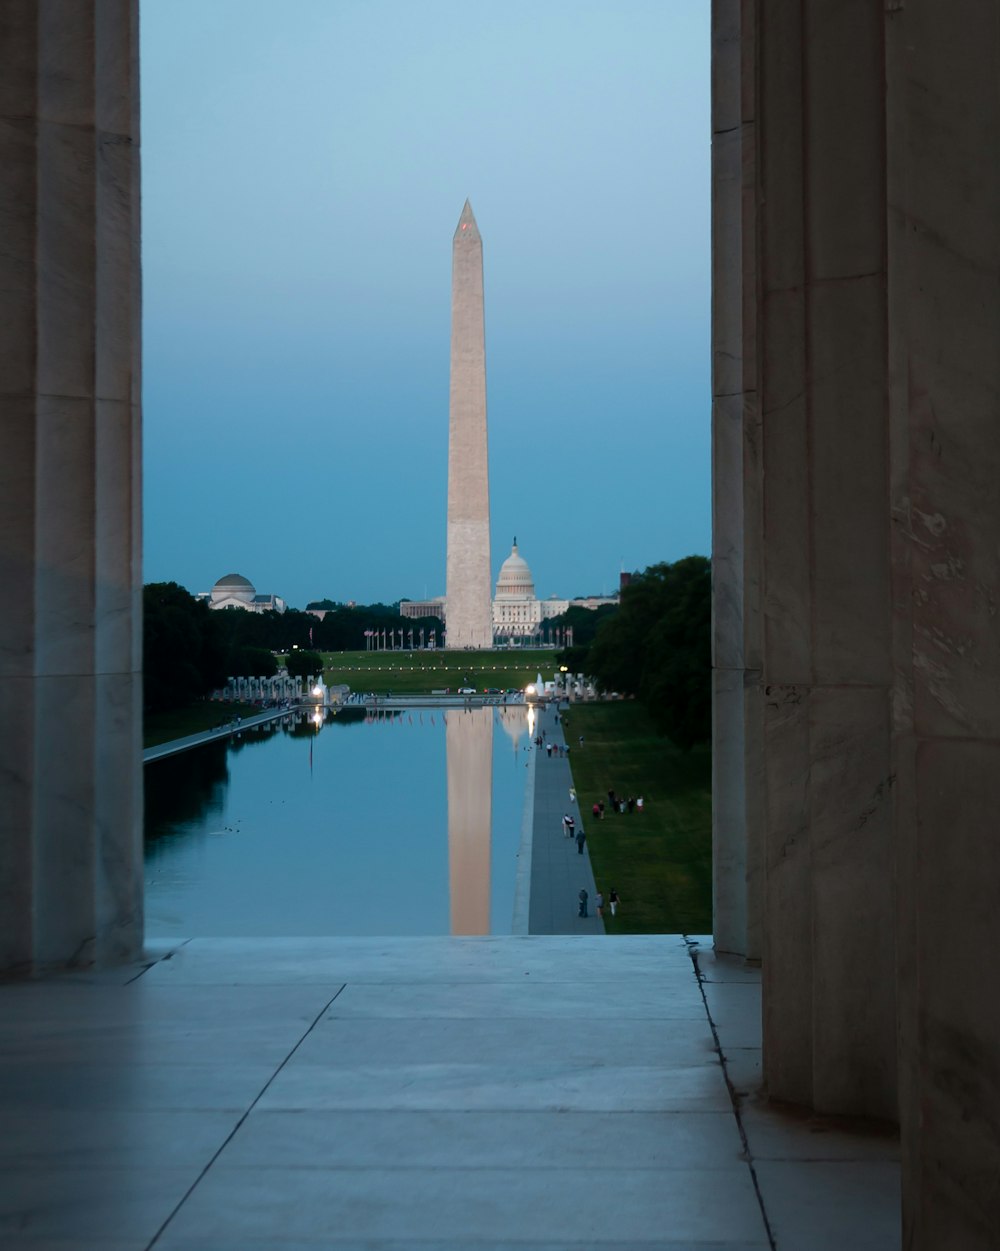 ワシントン記念塔の写真 Unsplashの無料写真